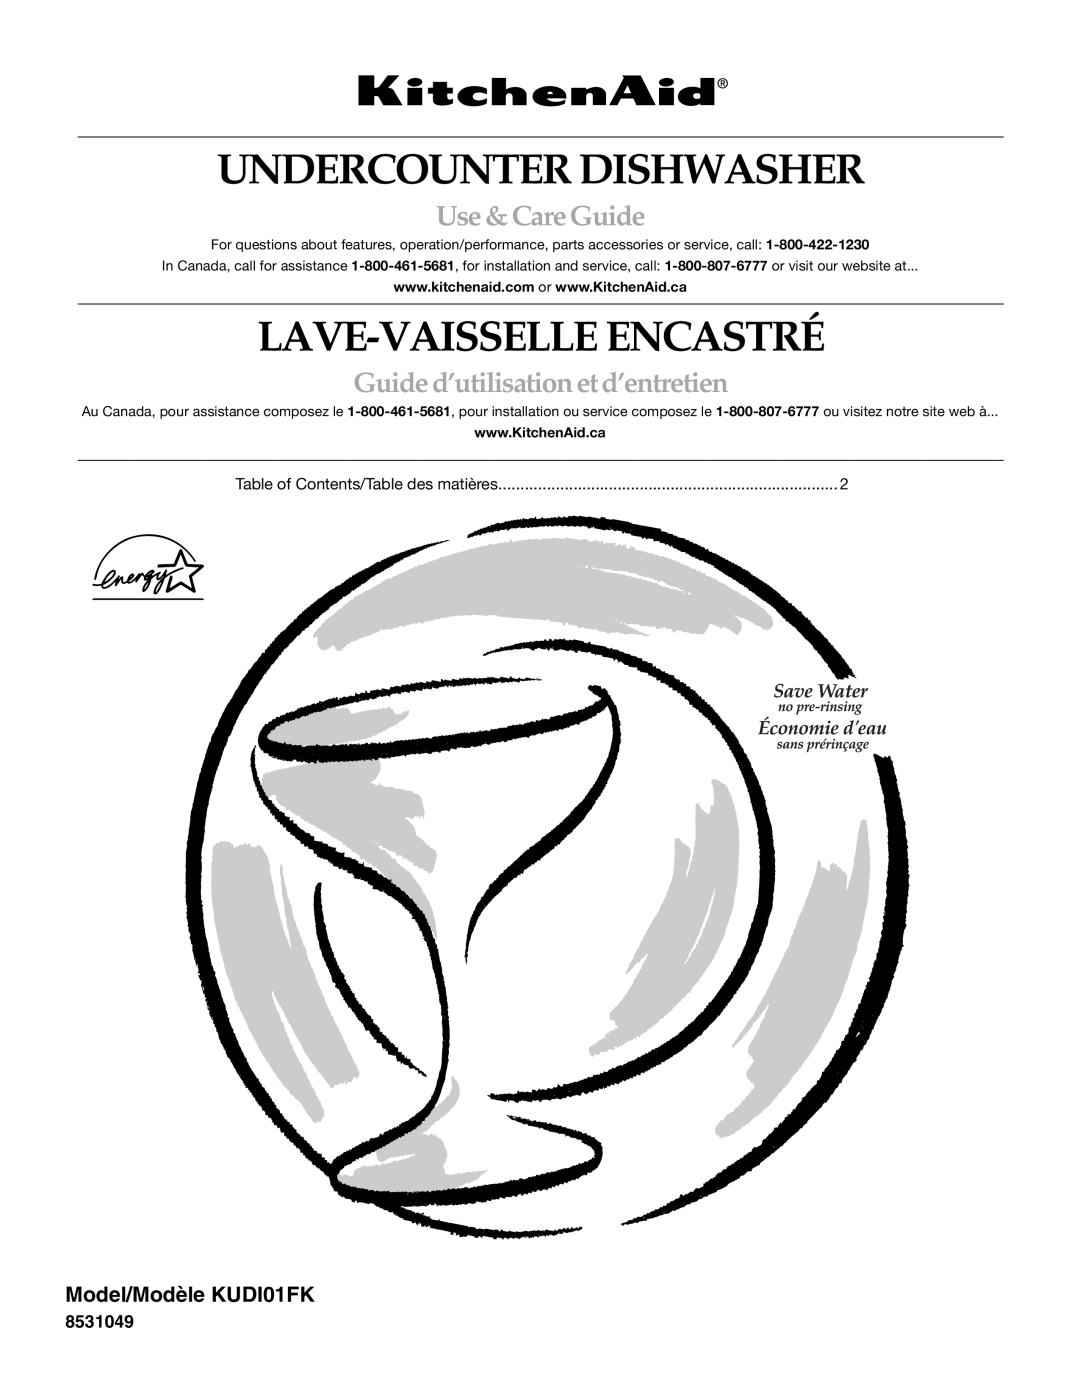 KitchenAid manual Undercounter Dishwasher, Lave-Vaisselle Encastré, Use &CareGuide, Model/Modèle KUDI01FK 